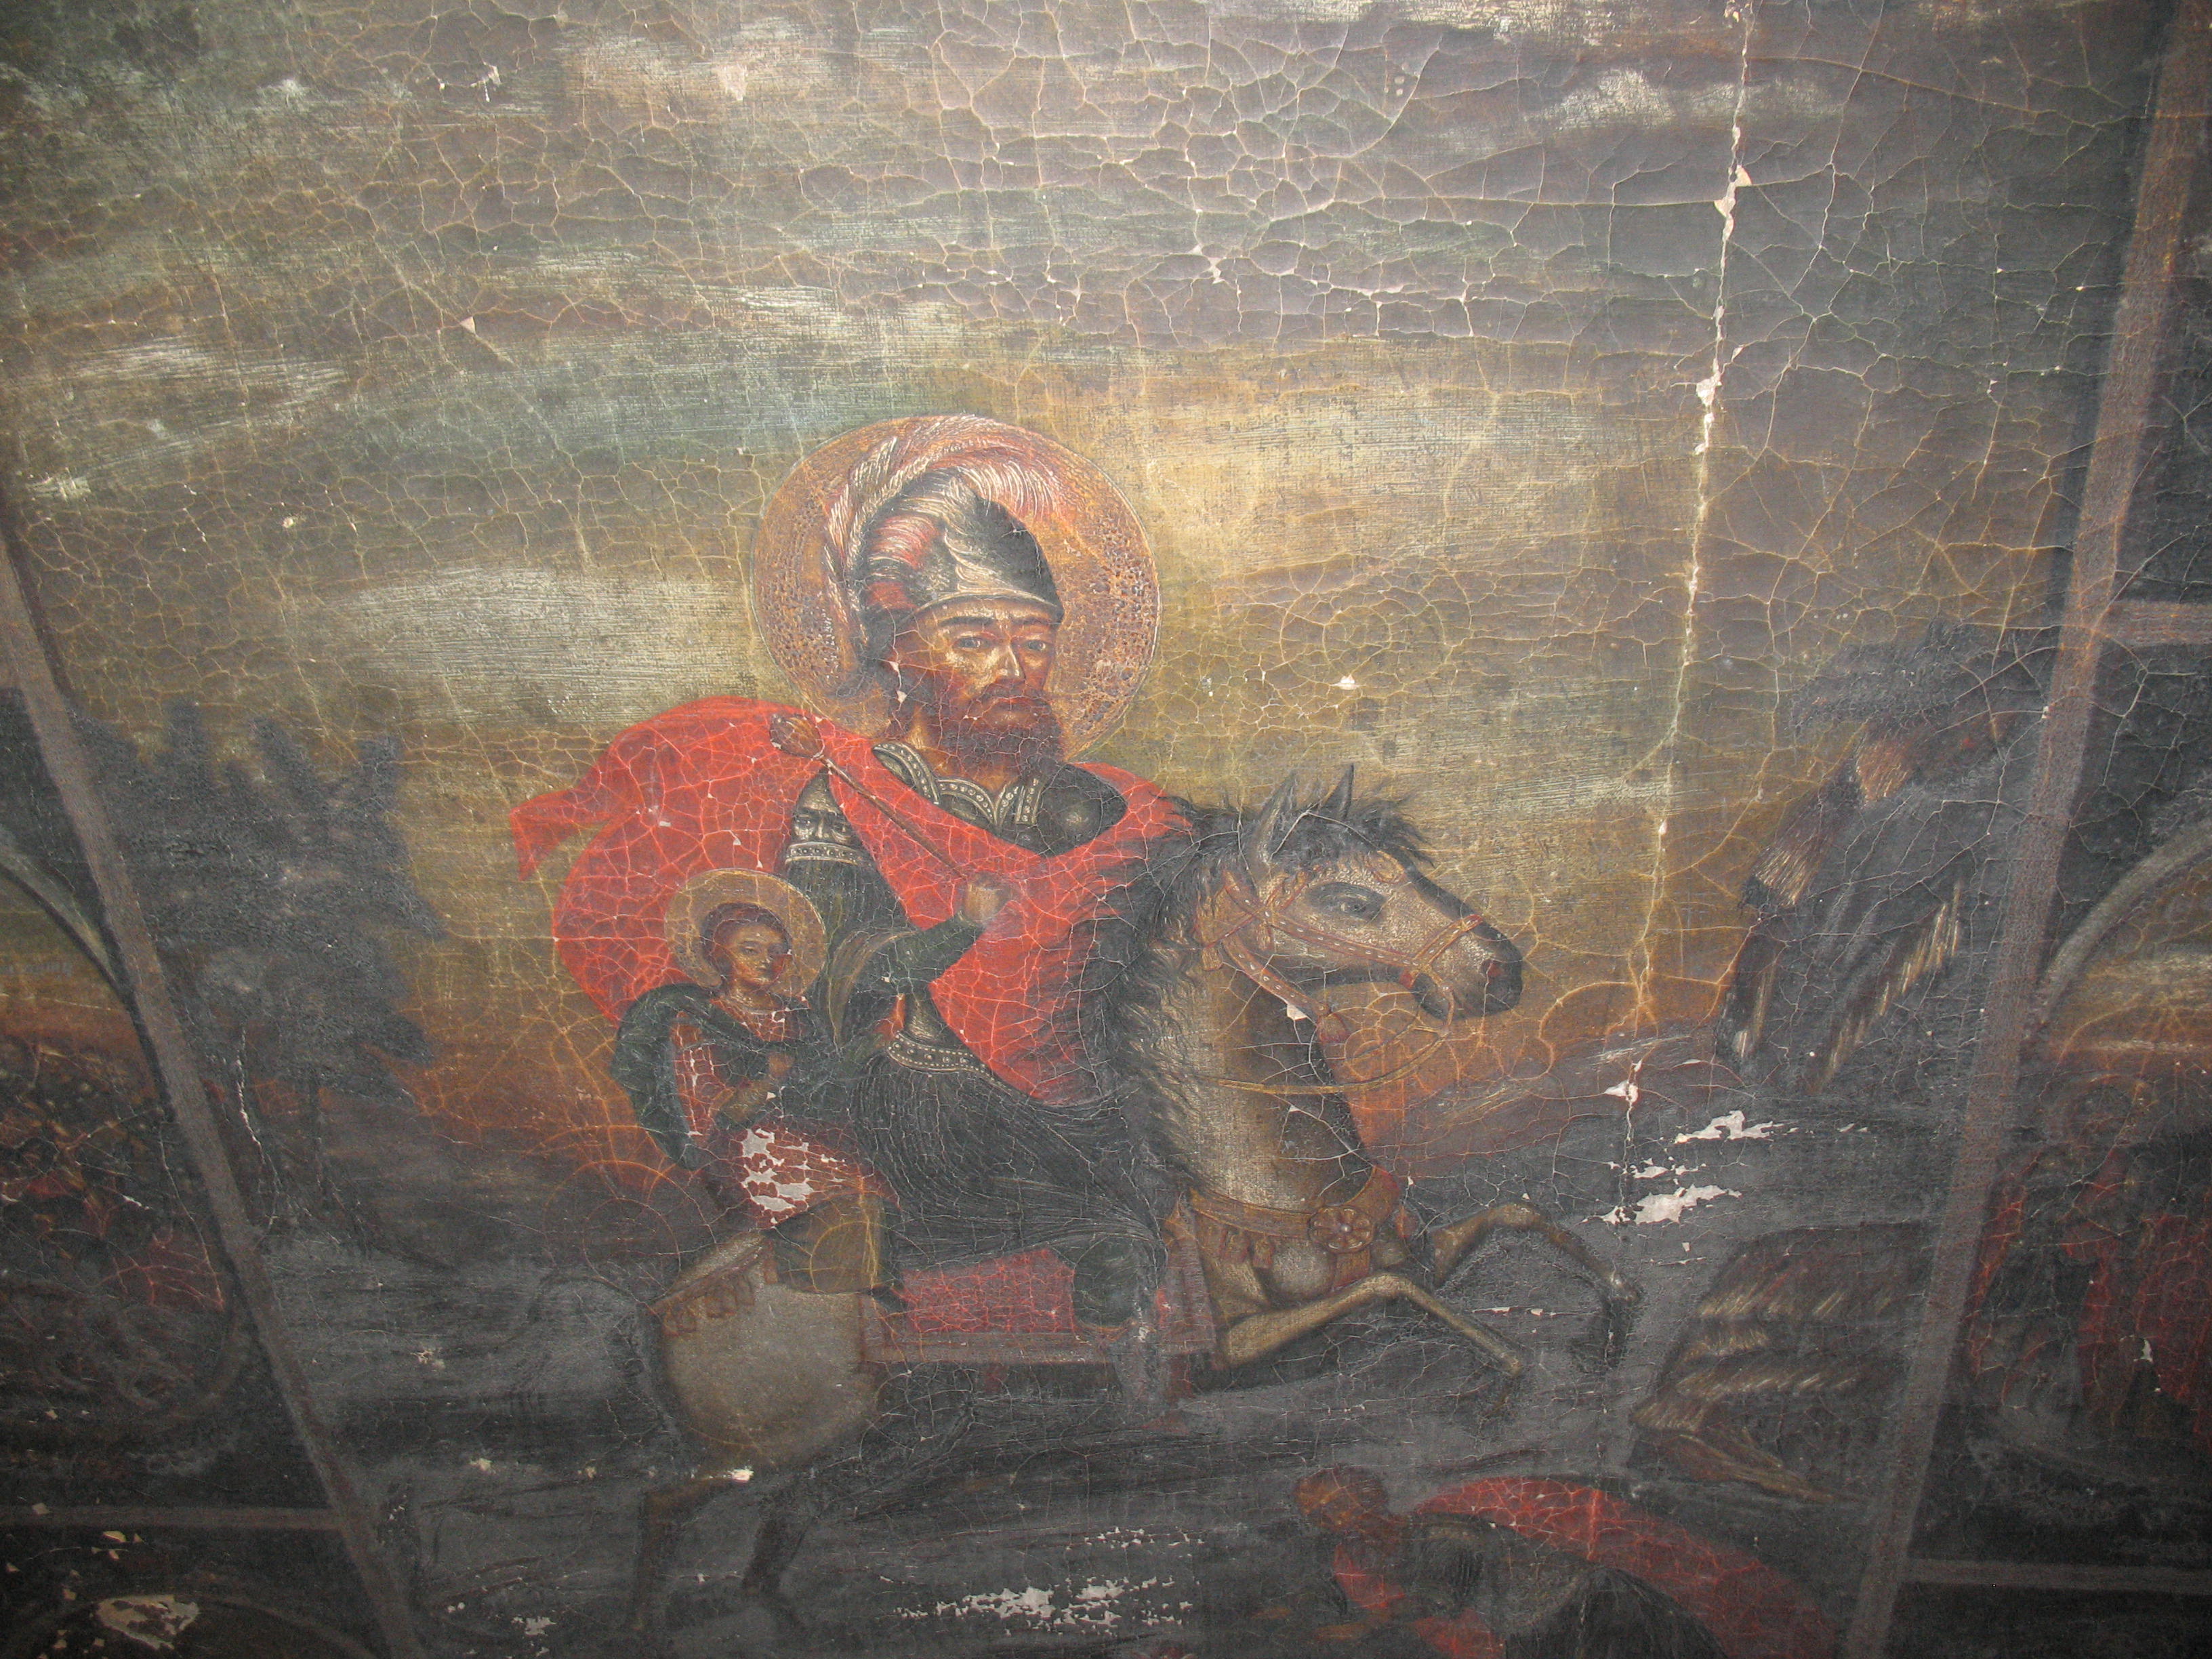 Icoana-Sfântul-Sarchis-_și-fiul-său-Mardiros-din-anul-1869-detaliu.-Biserica-armeană_-din-Botoșani